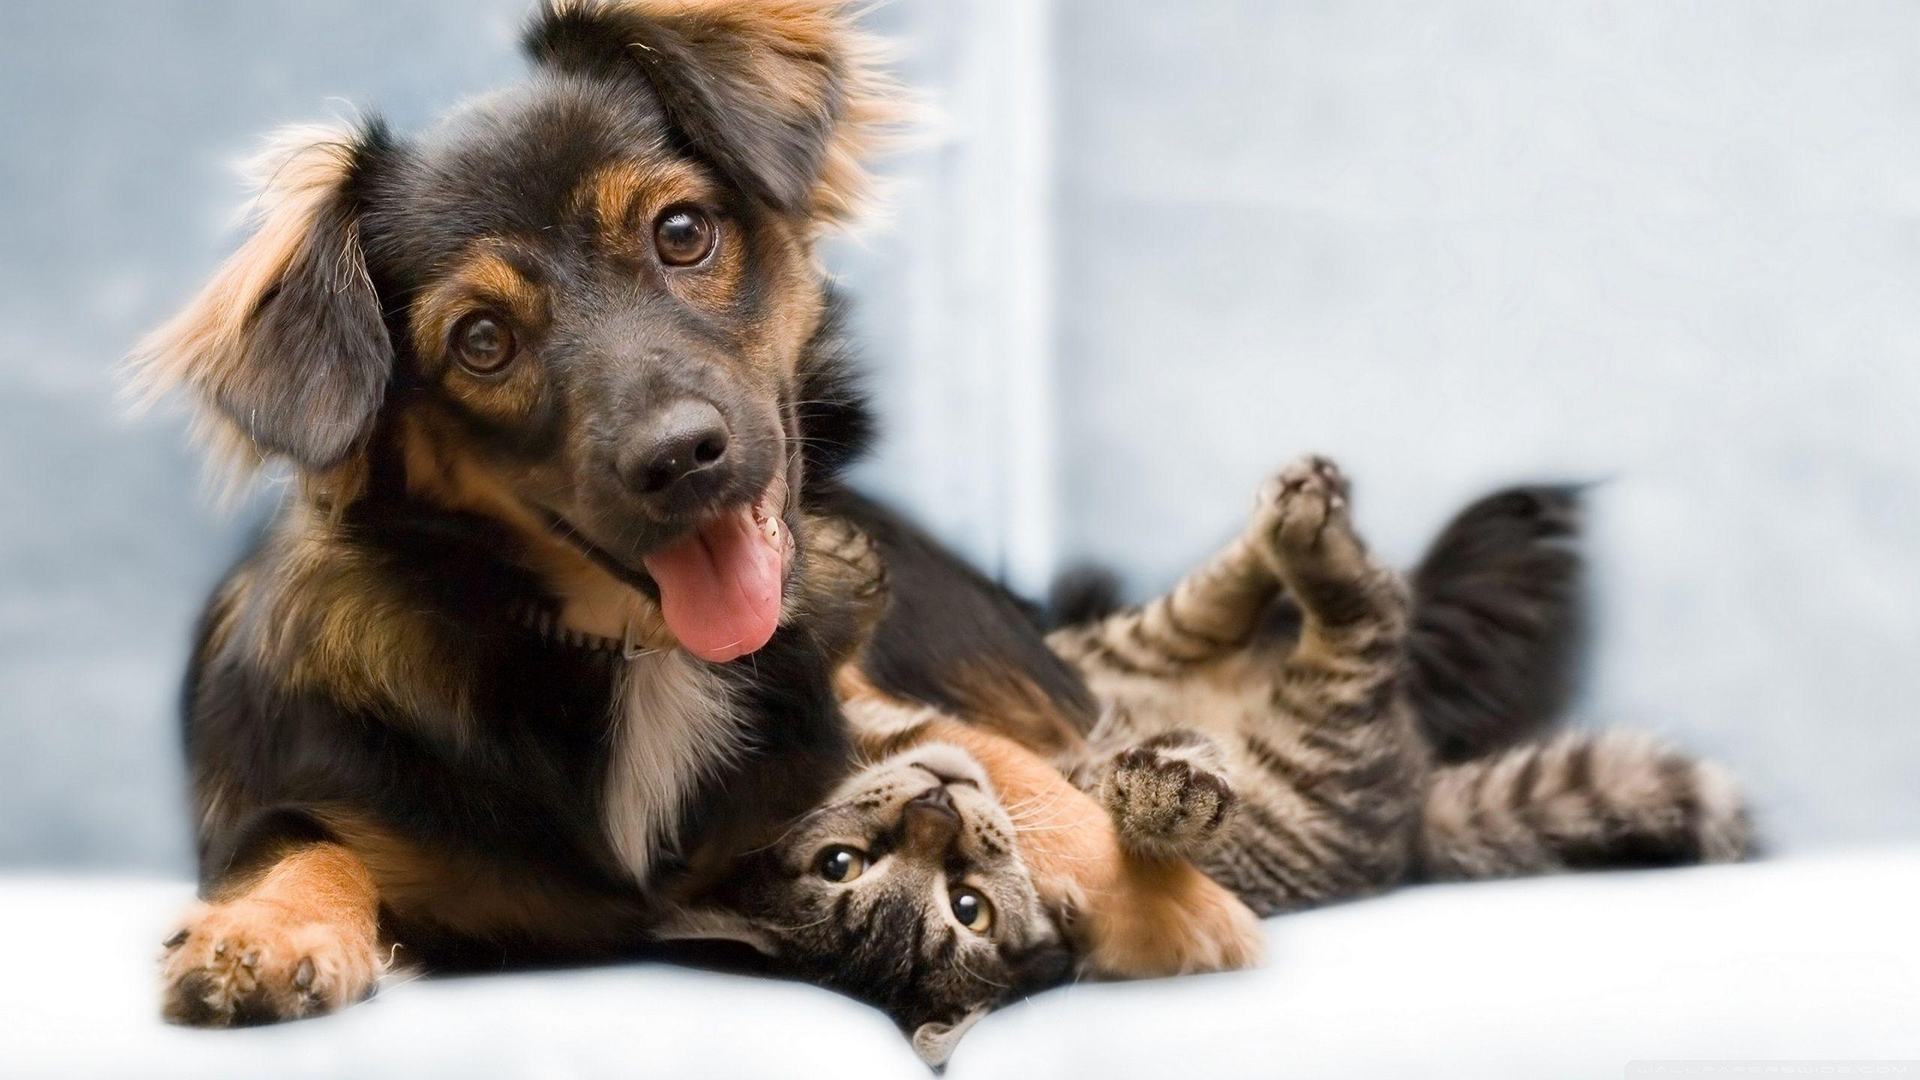 Hình nền hài hước  tình yêu giữa chó và mèo  Top hình nền đẹp cho điện  thoại hot nhất năm Bính Thân 2016  Cute cats and dogs Dog cat pictures  Cute cats